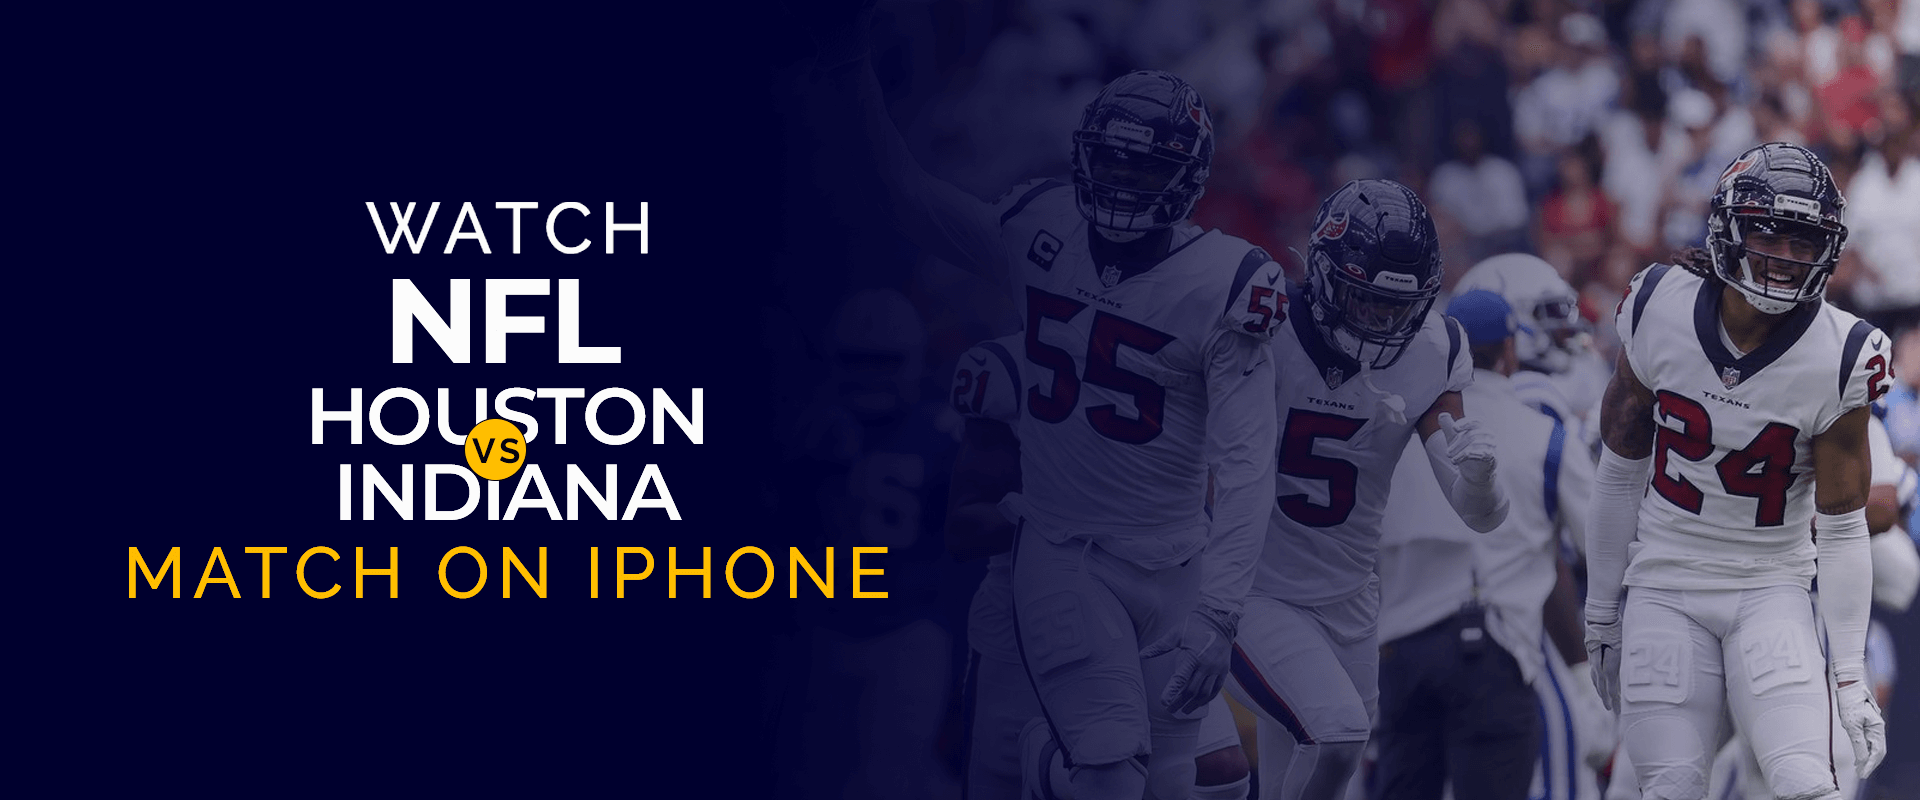 Regardez le match NFL Houston contre Indiana sur iPhone